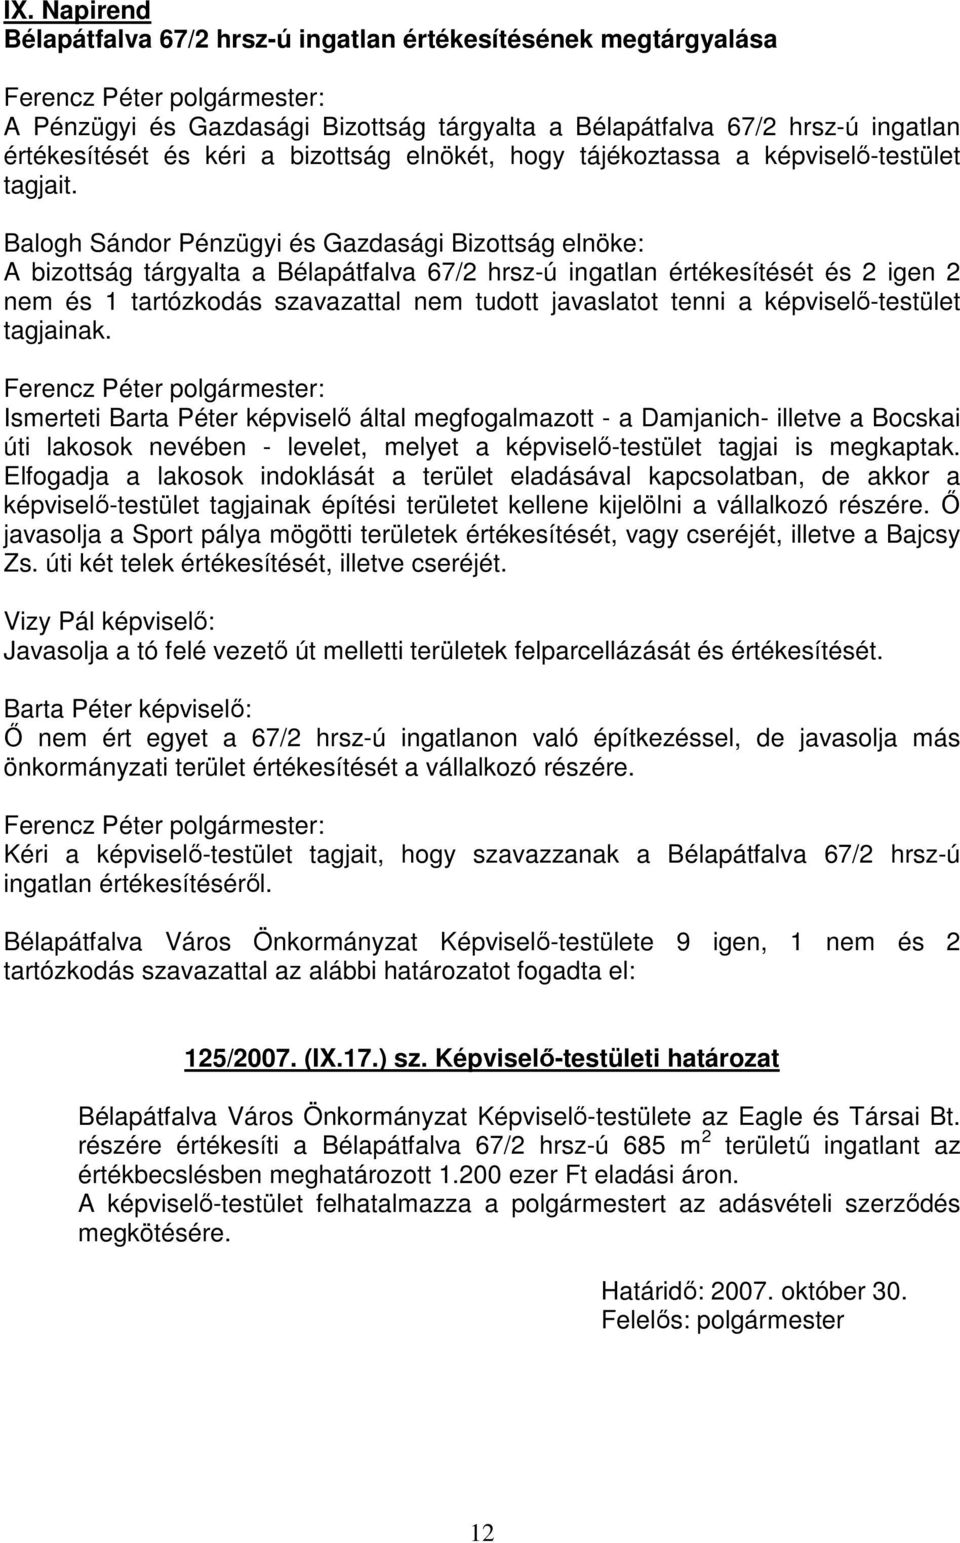 A bizottság tárgyalta a Bélapátfalva 67/2 hrsz-ú ingatlan értékesítését és 2 igen 2 nem és 1 tartózkodás szavazattal nem tudott javaslatot tenni a képviselő-testület tagjainak.